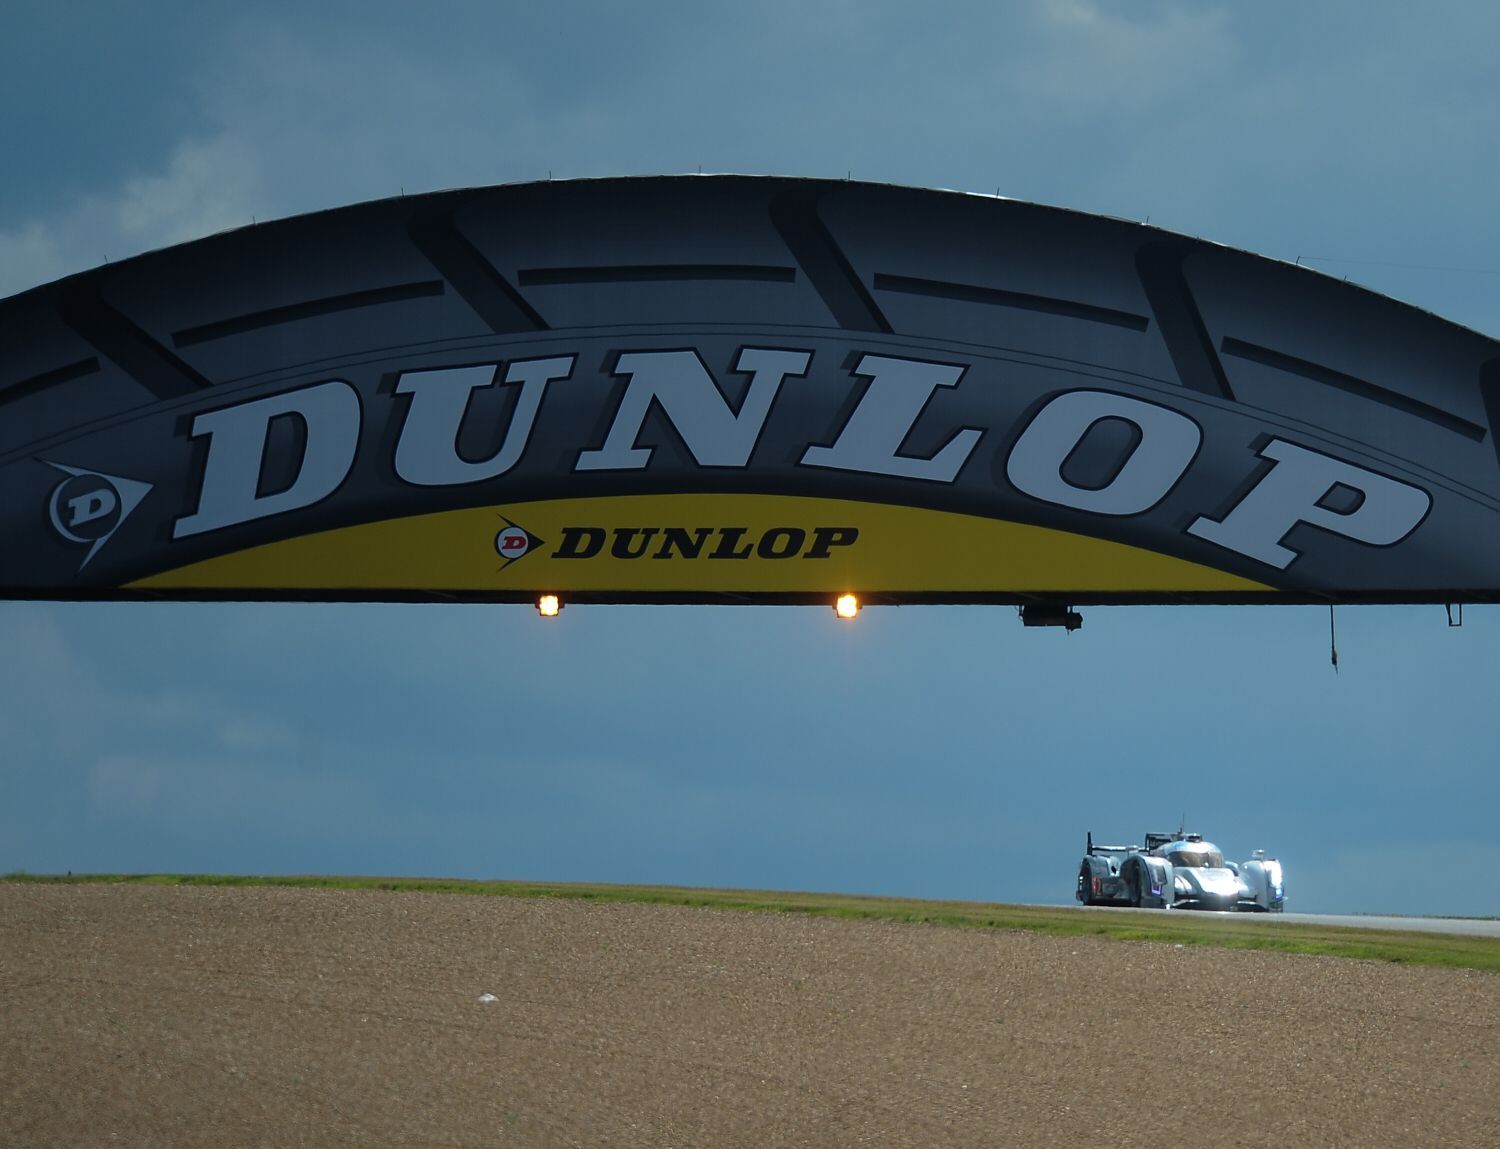 Most Dunlop, Le Mans 2012